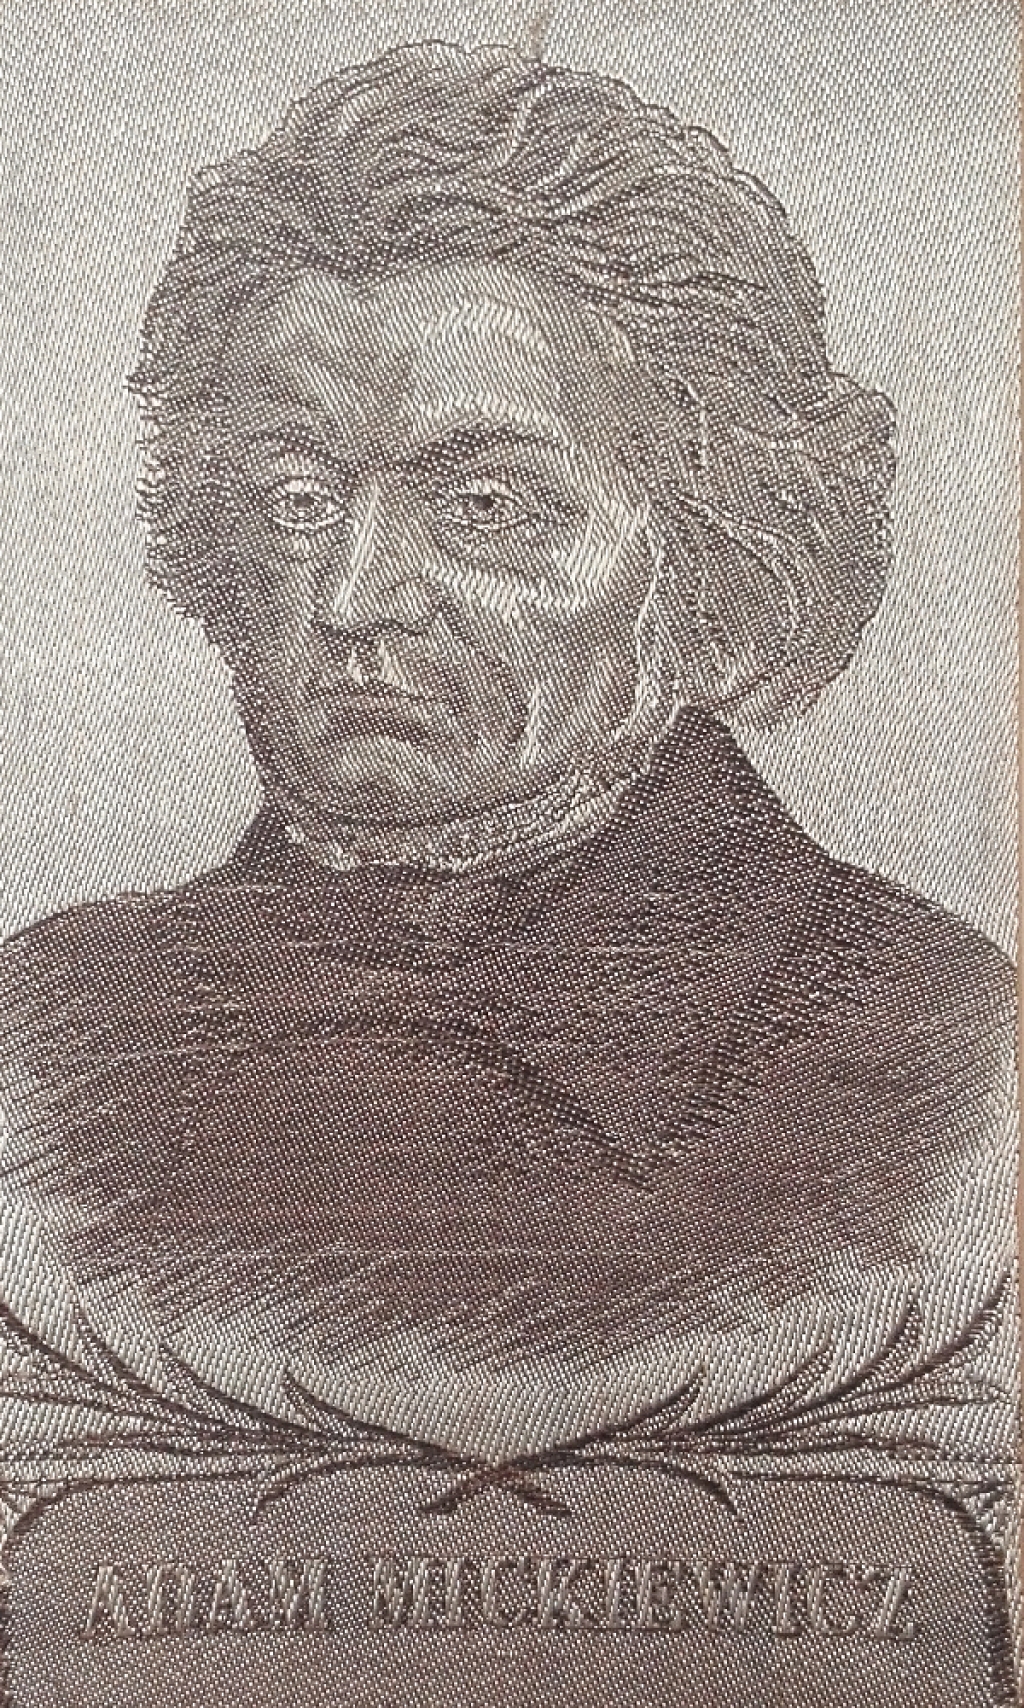 [portret na jedwabiu, 1933] Adam Mickiewicz